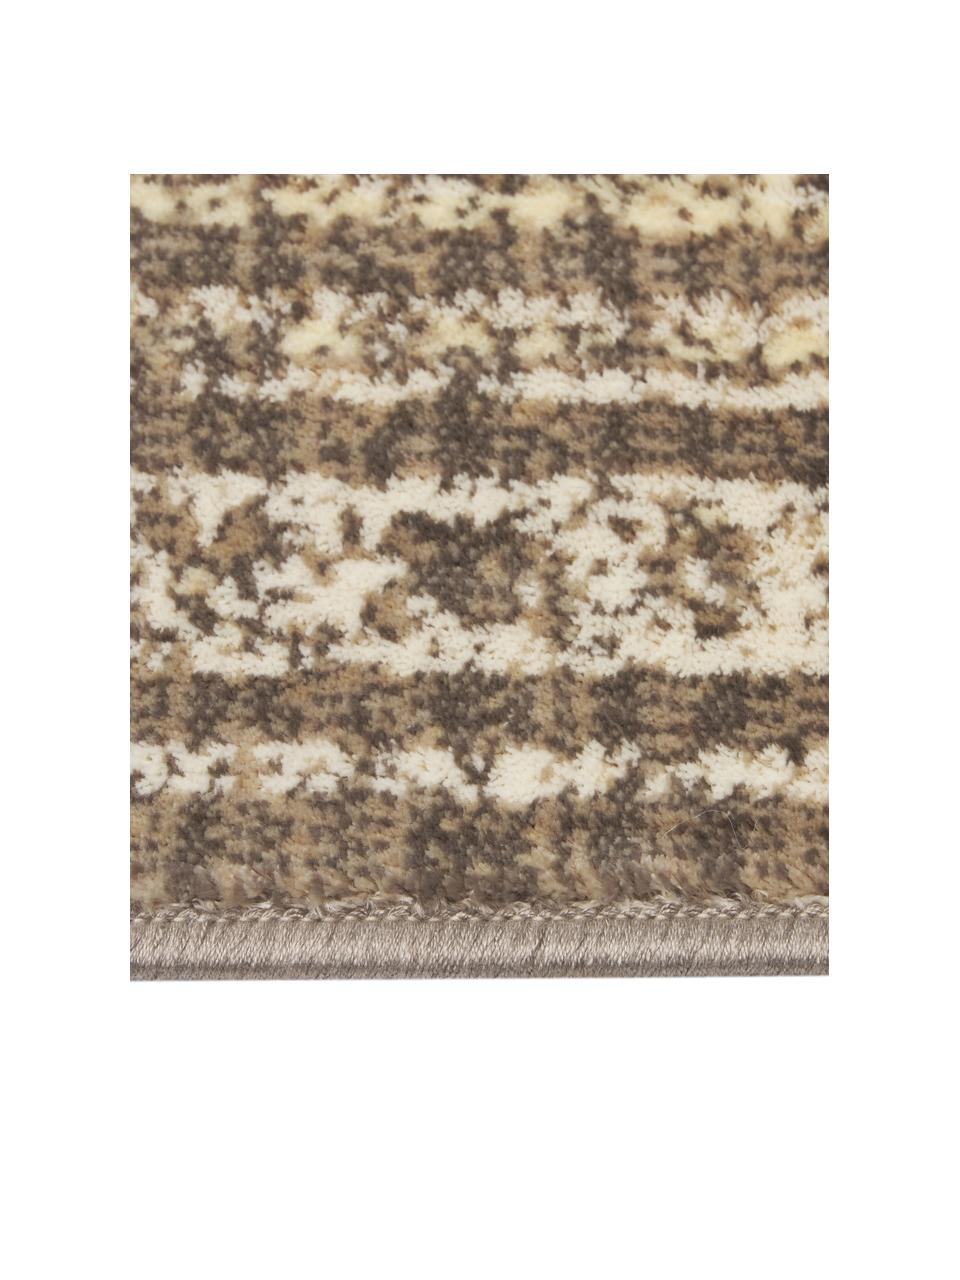 Vintage Teppich Rugged in Beigetönen, 66% Viskose, 25% Baumwolle, 9% Polyester, Beige, Braun, B 170 x L 240 cm (Grösse M)